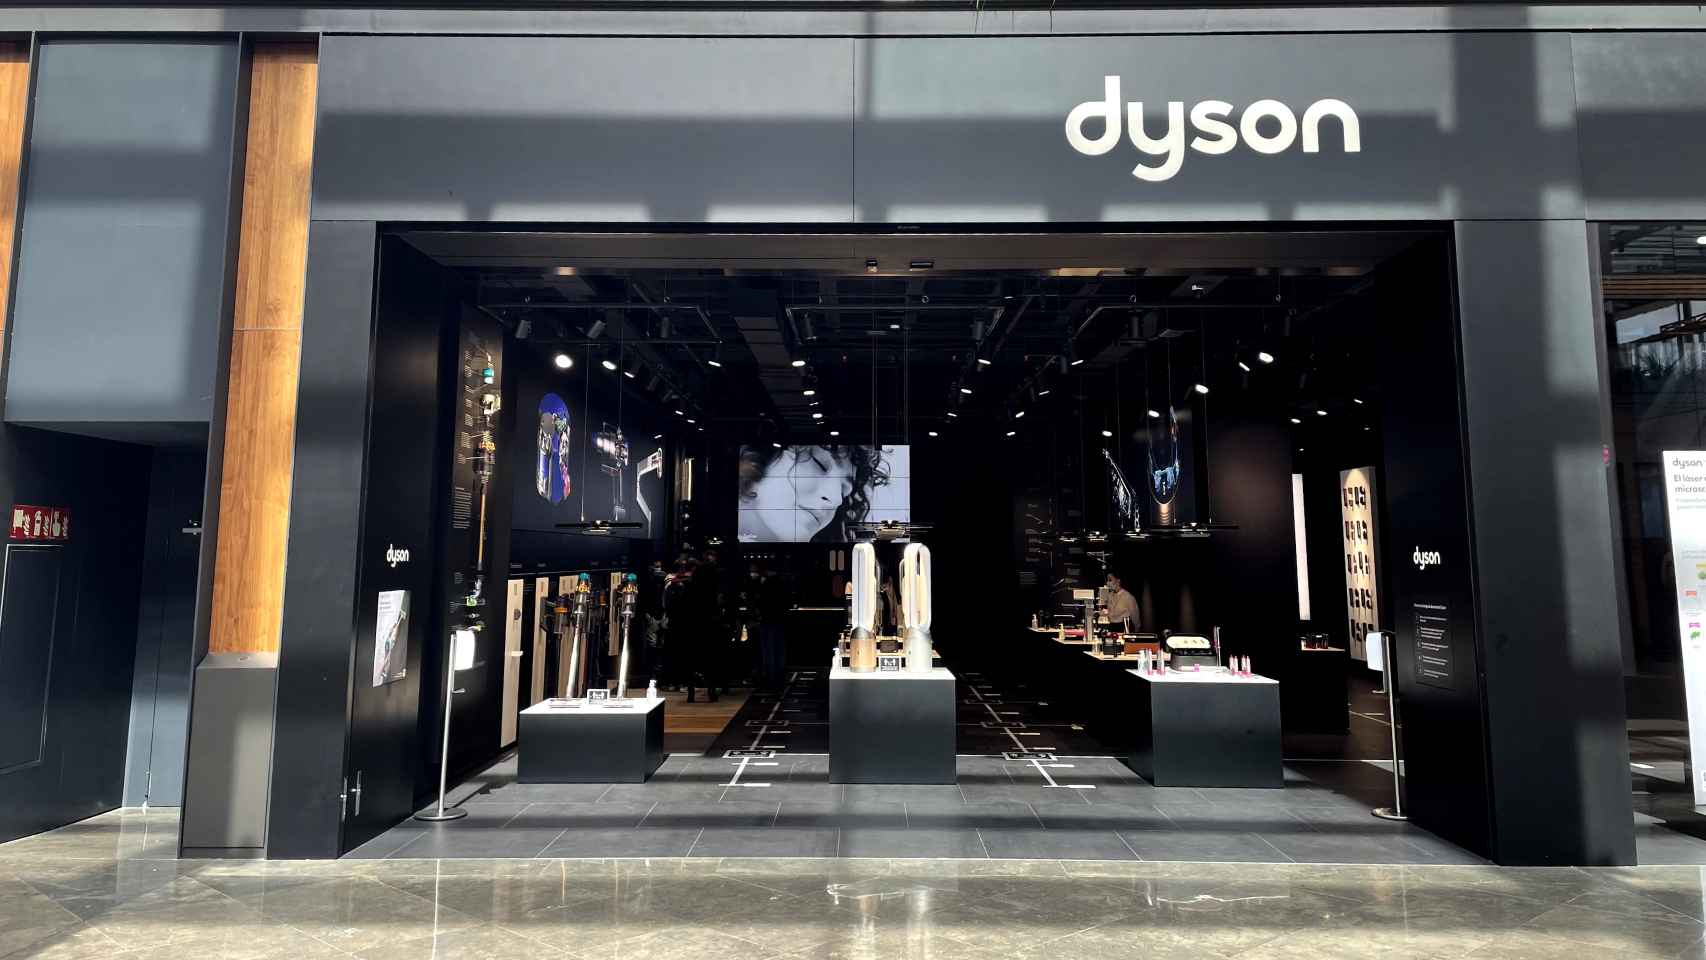 Visitamos la tienda Dyson en Barcelona